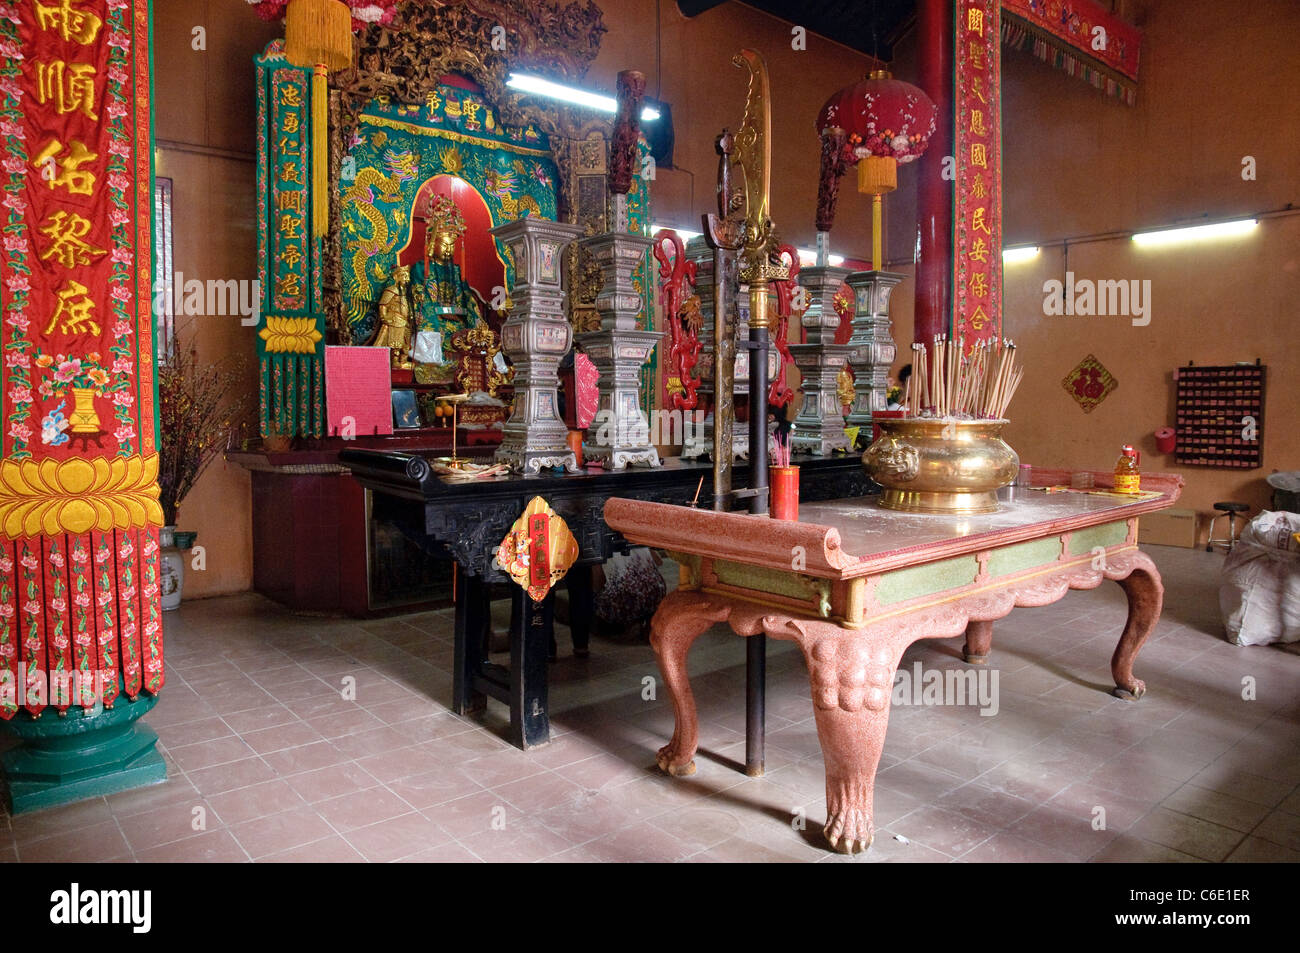 Altare in un tempio Cinese, Kuala Lumpur, Malesia, Asia sud-orientale, Asia Foto Stock